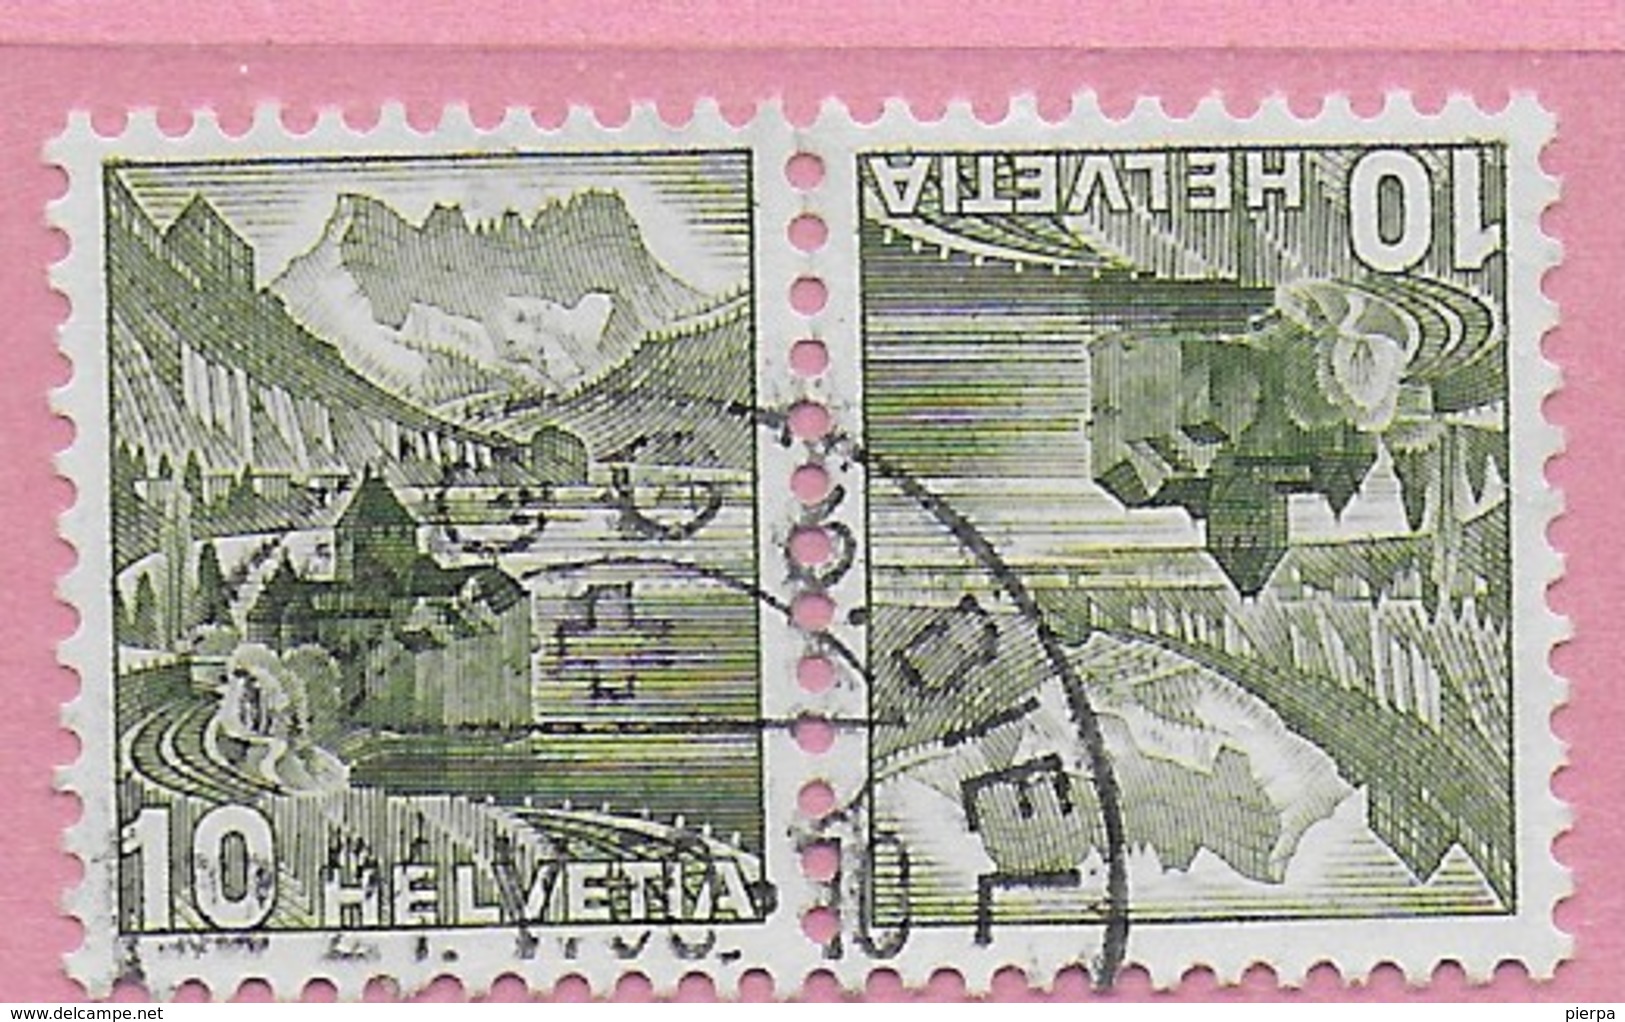 SVIZZERA - TETE-BECHE - 1948 ORDINARIA 10 CENT. (YVERT 462a) USATA - Tete Beche